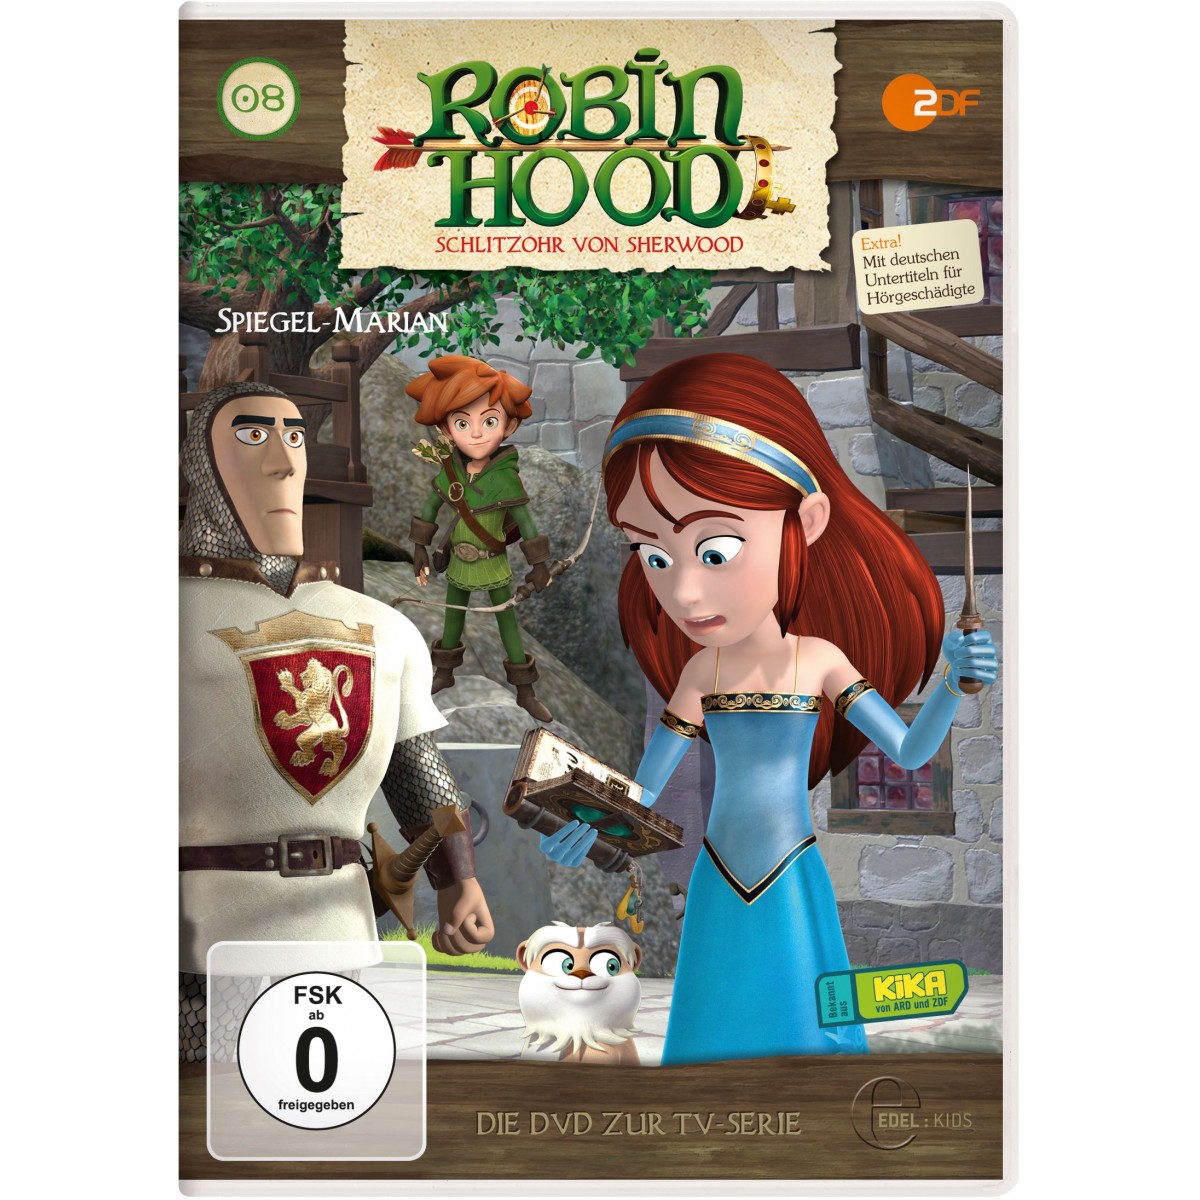 Edel:KIDS DVD - Robin Hood - Schlitzohr von Sherwood - Spiegel-Marian, Folge 8